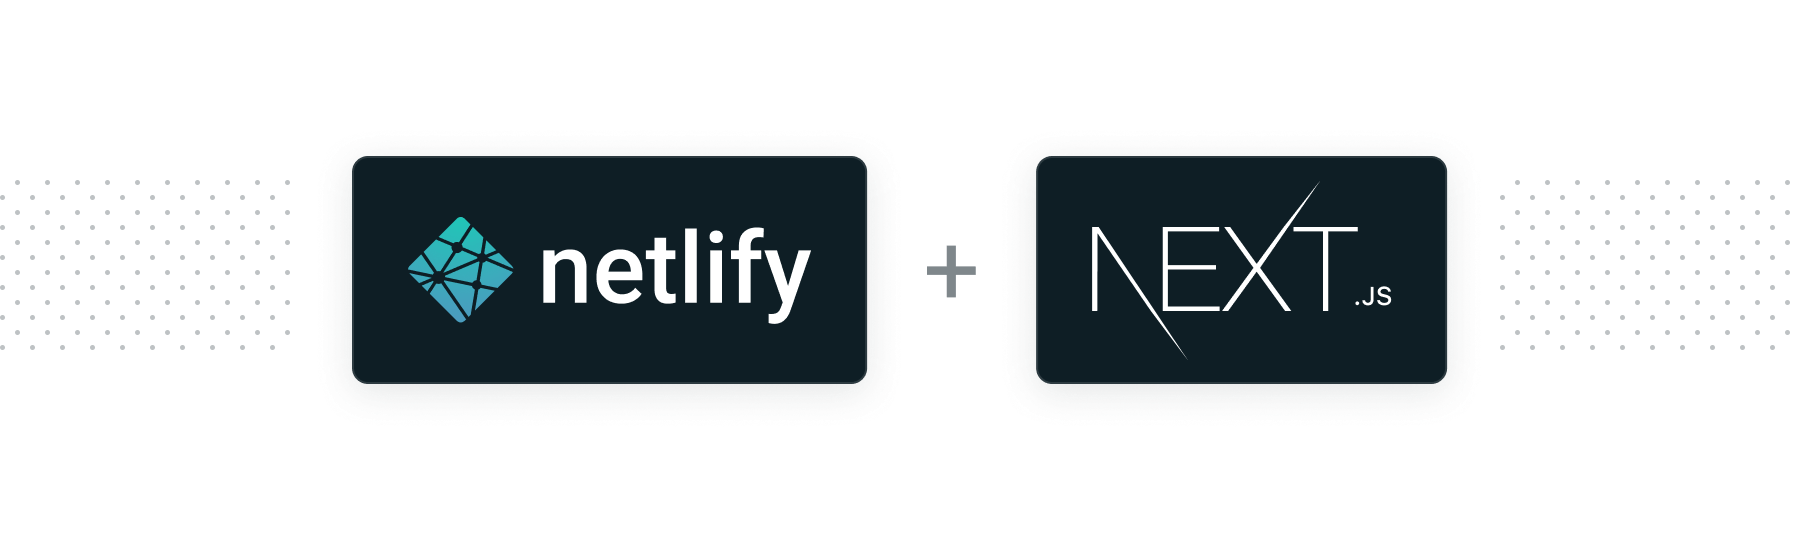 Next.js on Netlify